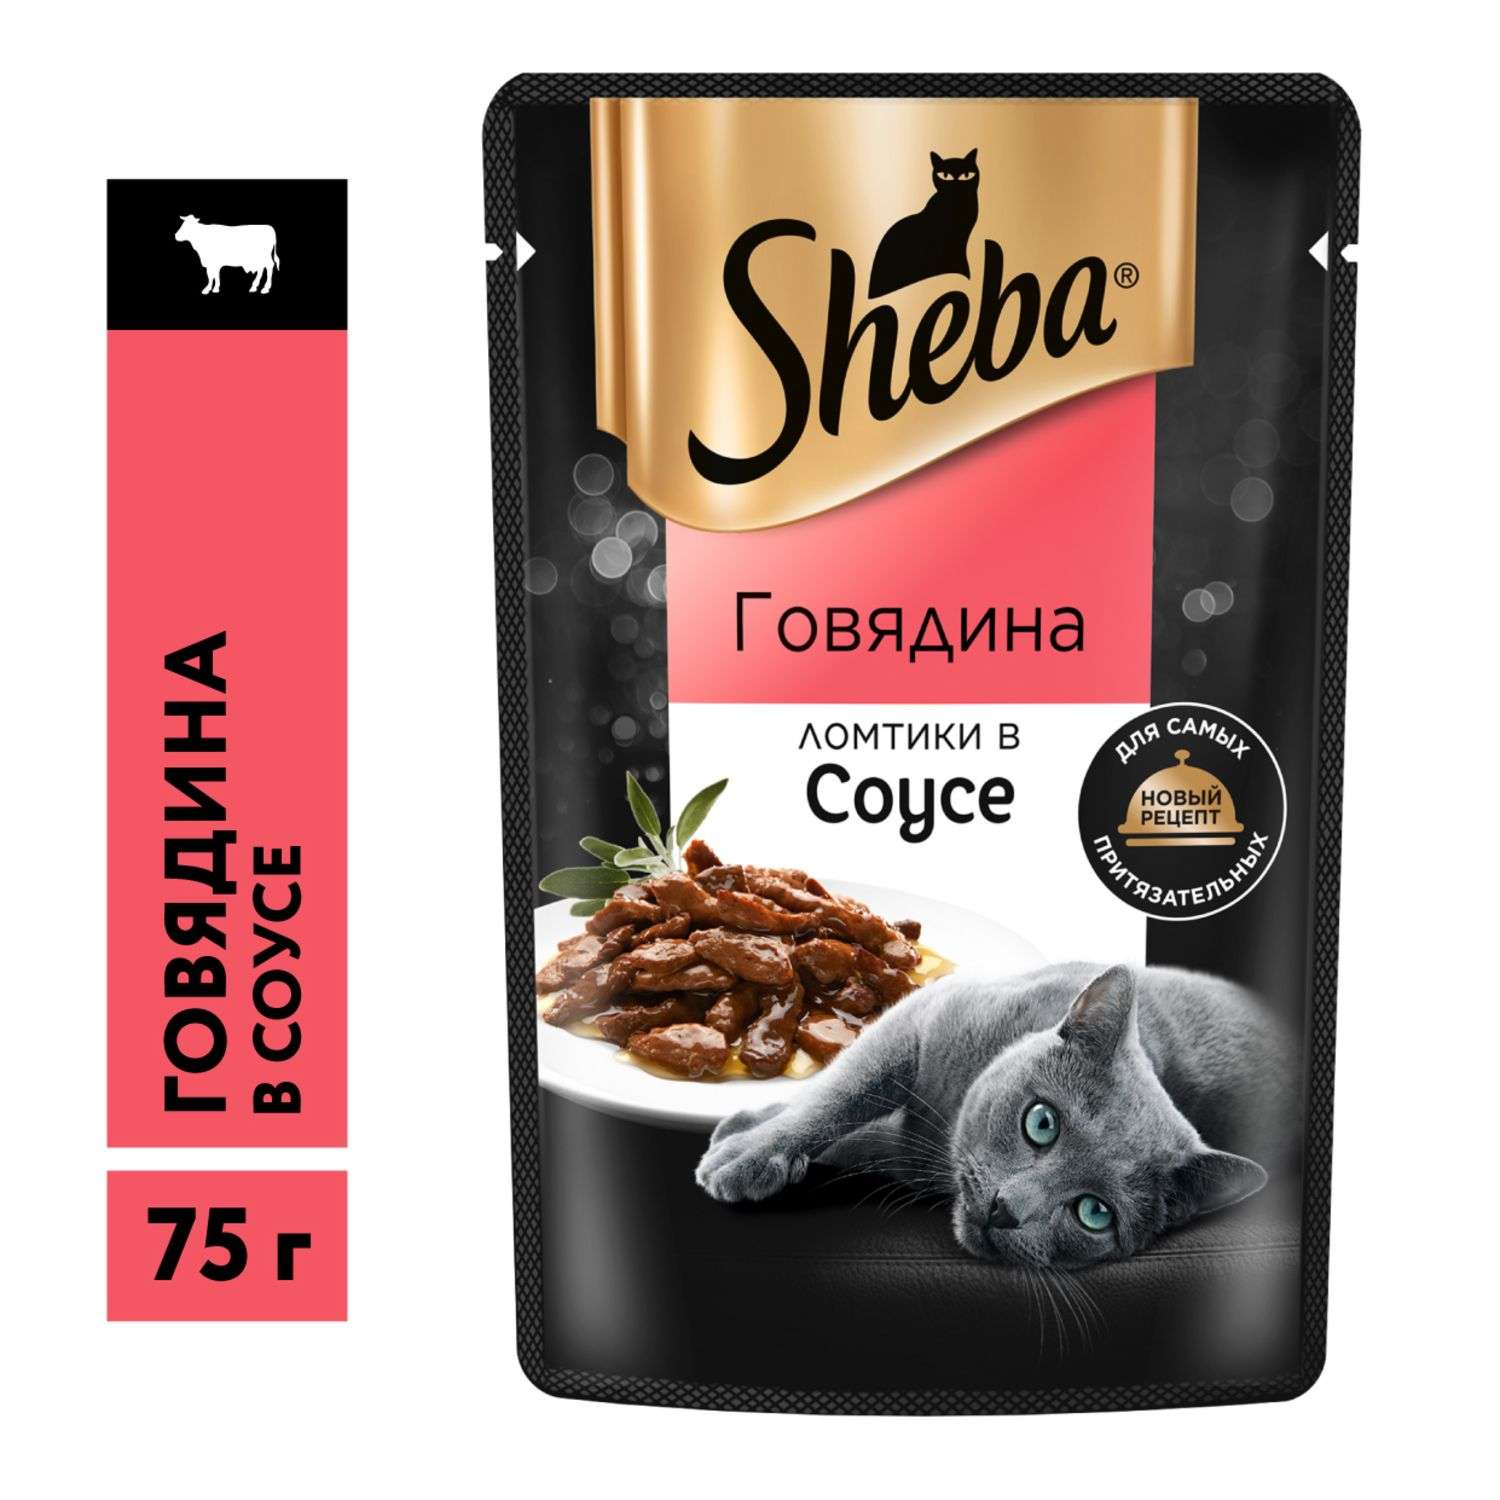 Корм для кошек Sheba 75г ломтики в соусе с говядиной - фото 14